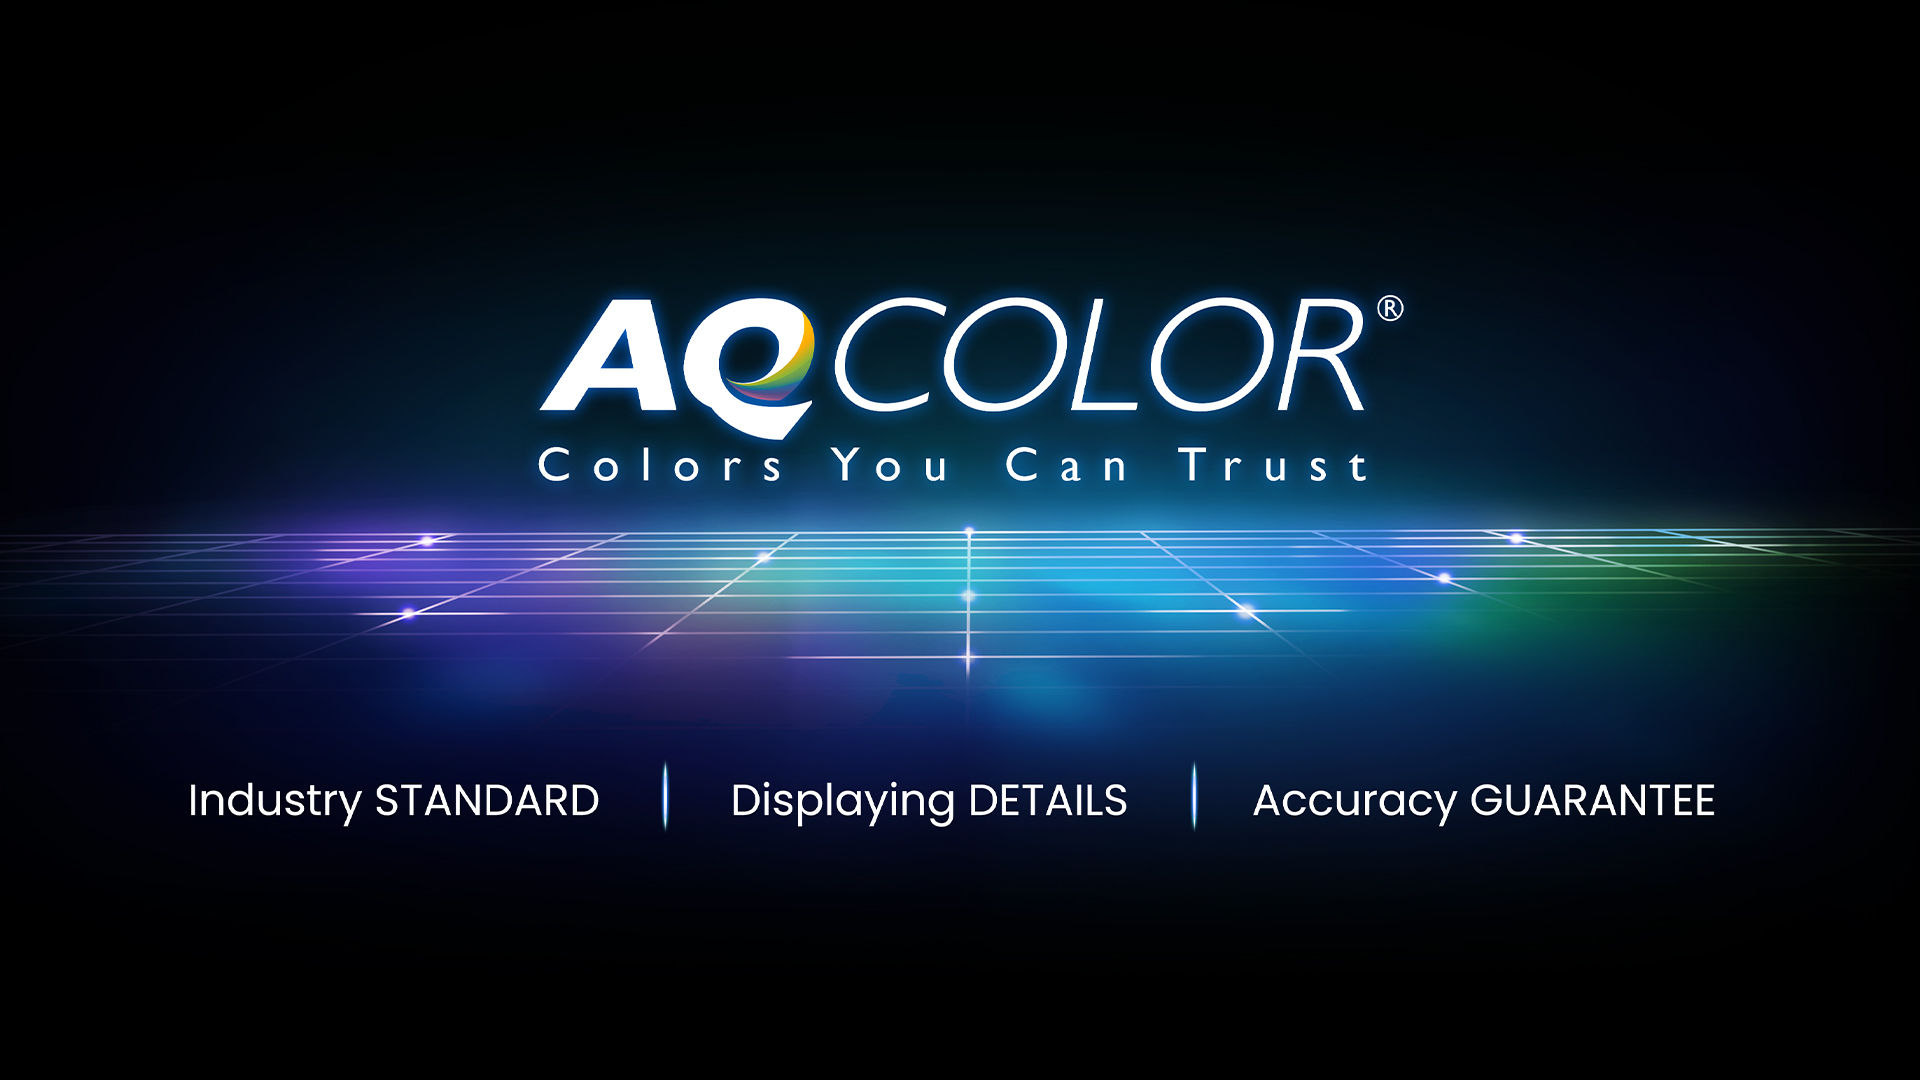 BenQ AQCOLOR technologie levert nauwkeurige weergave op jouw monitor zodat de weergave van kleur precies zo is als het bedoeld is. 